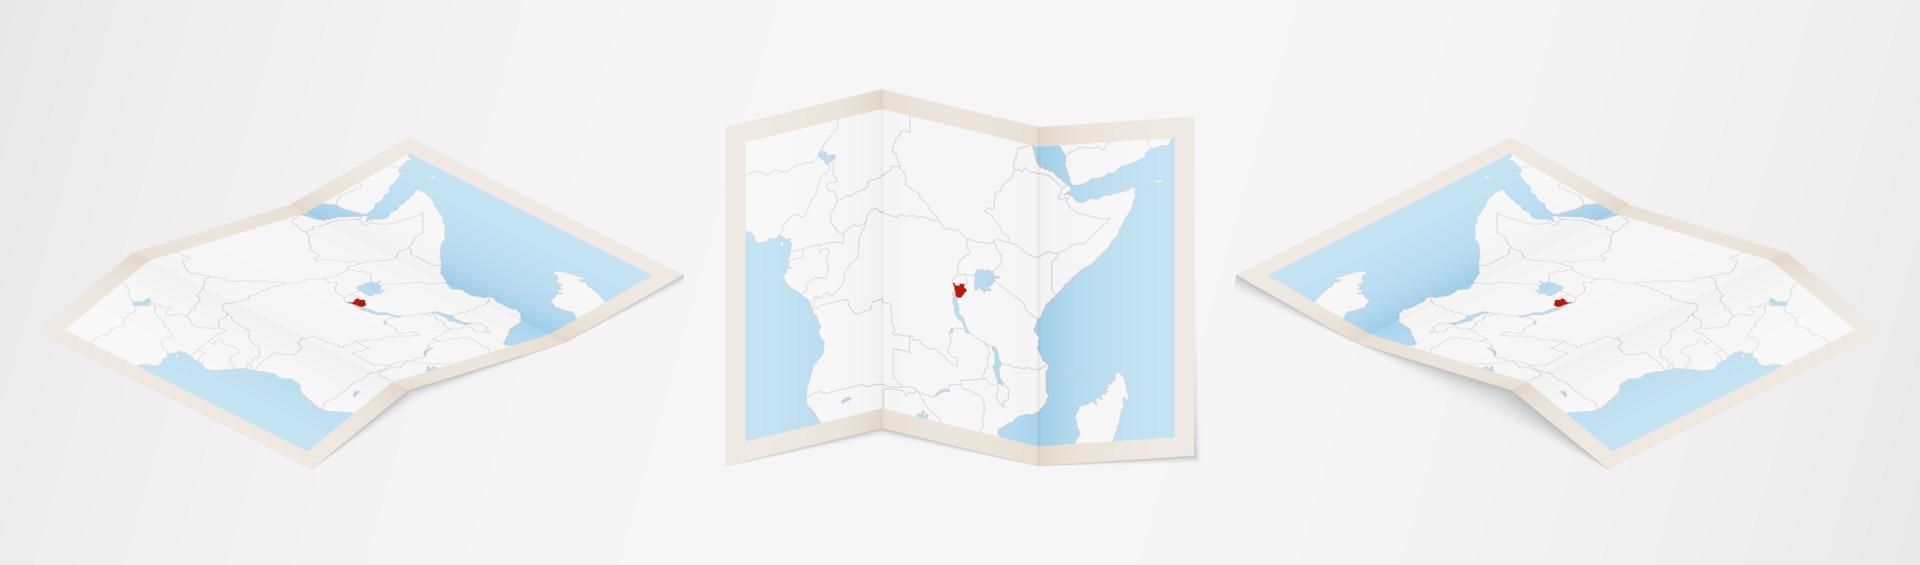 mapa plegado de burundi en tres versiones diferentes. vector